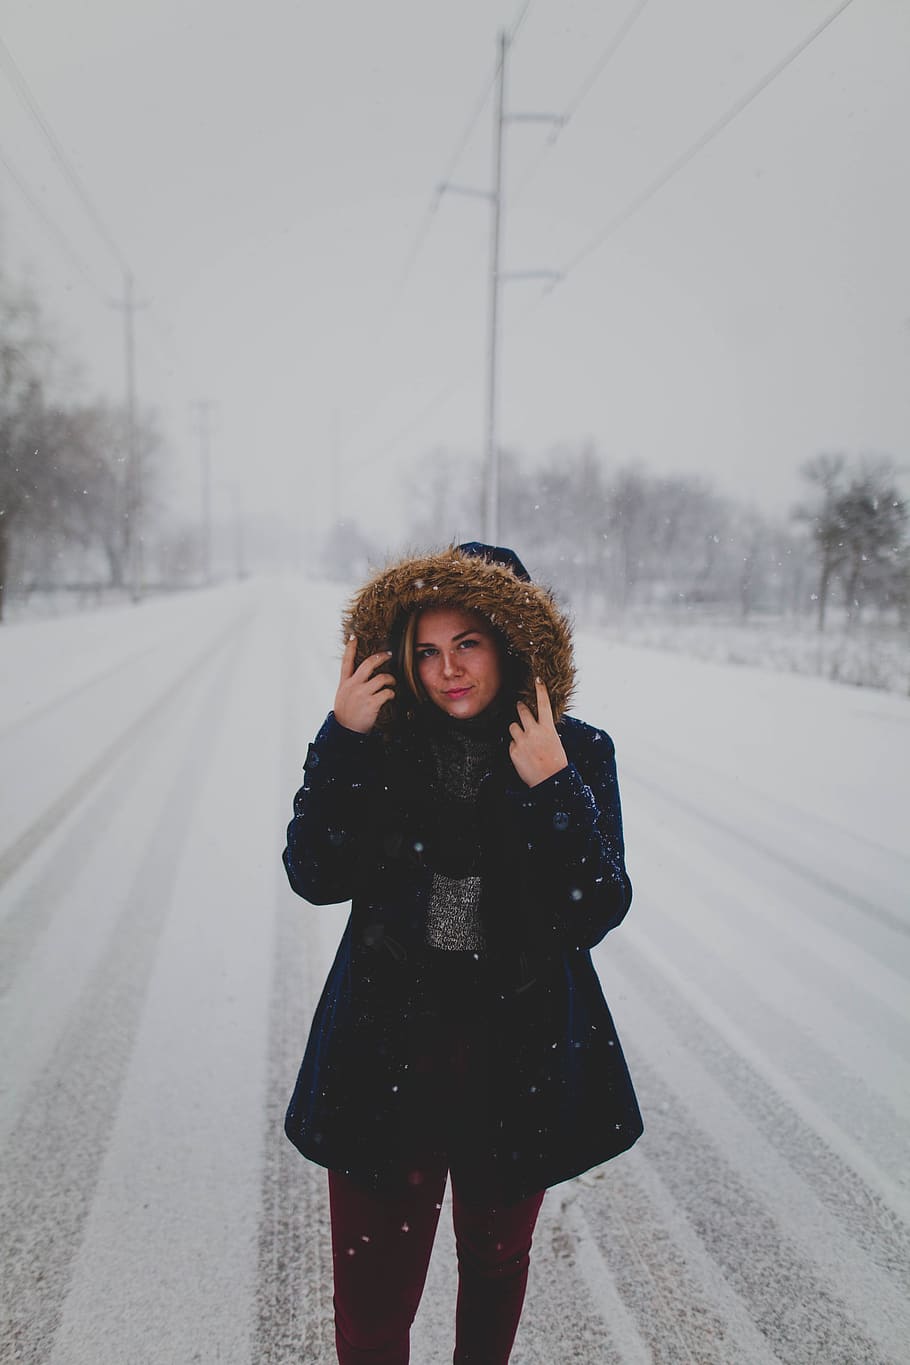 Fotos de Mujer en la nieve, Imagens de Mujer en la nieve sem royalties